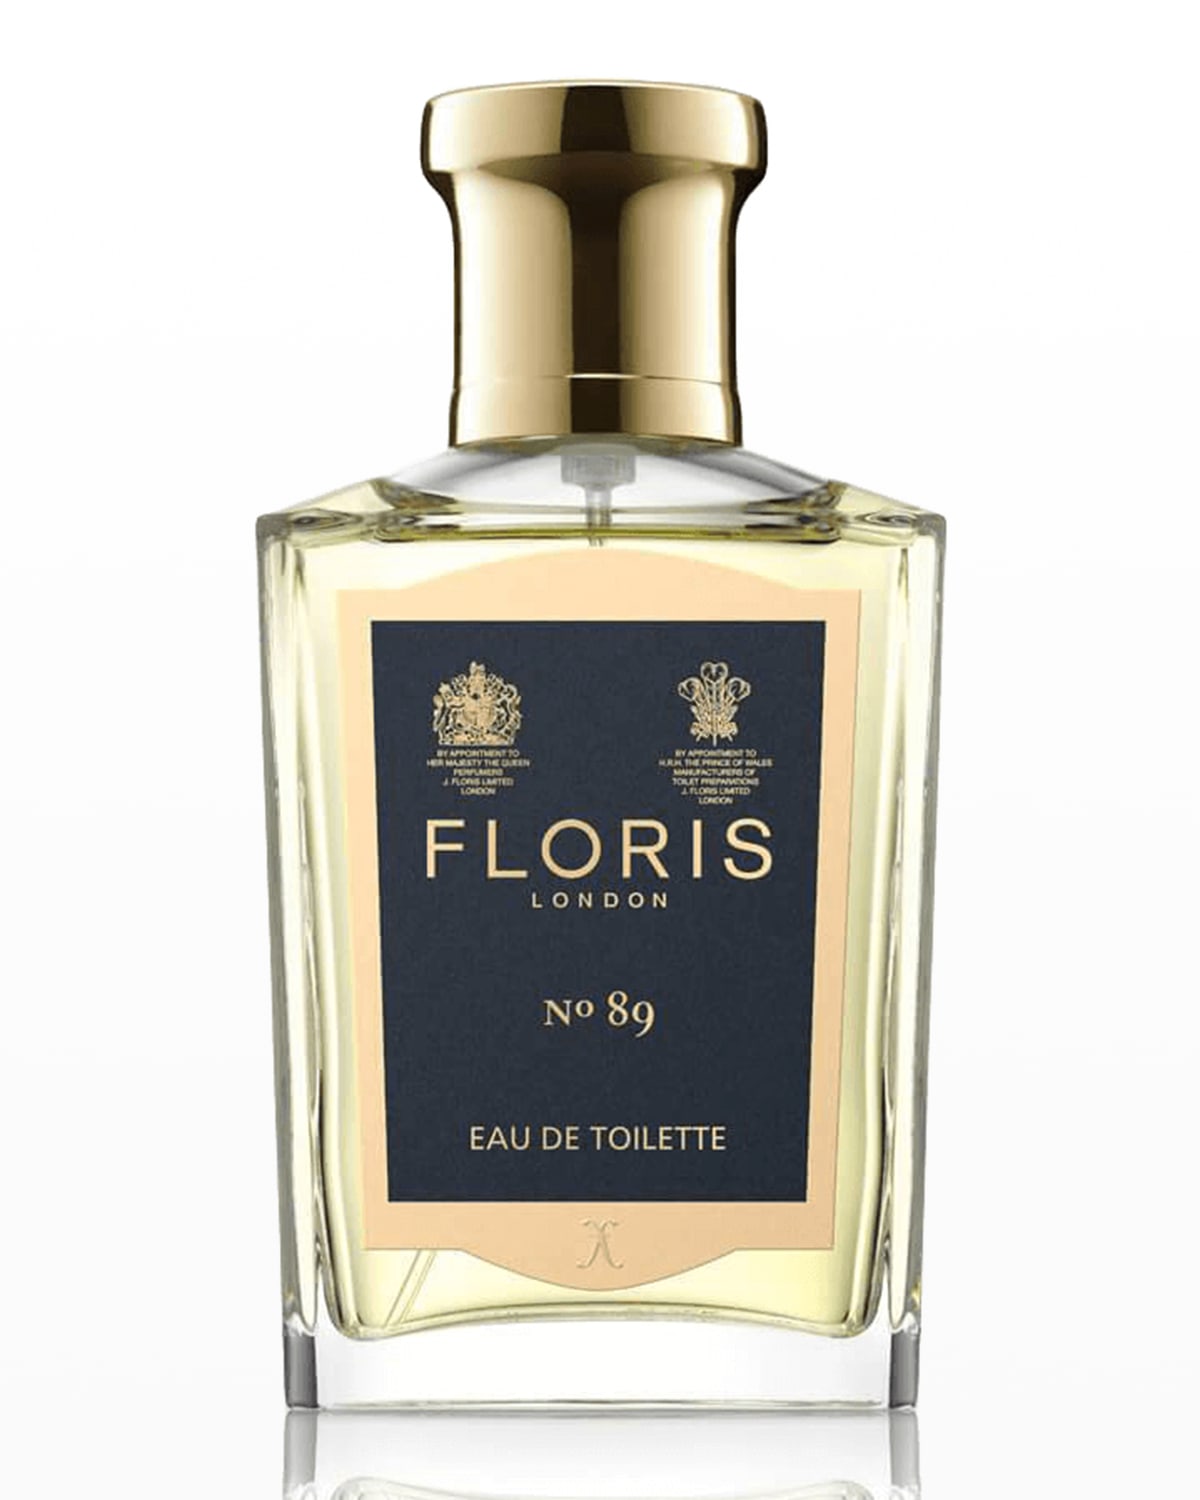 Floris London 1.7 oz. No.89 Eau de Toilette